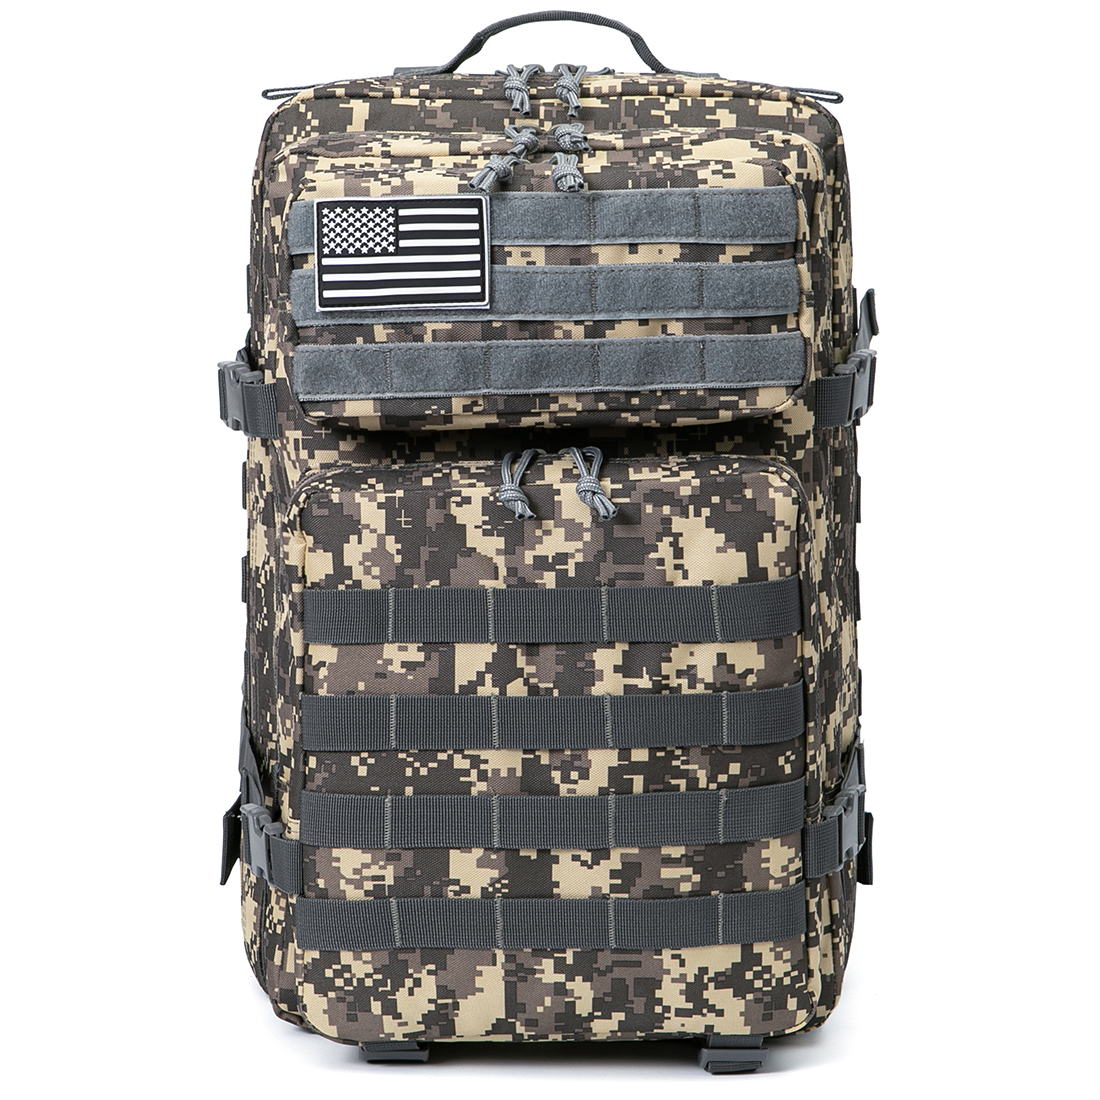 QT&QY Military Tactical Backpacks For Men Molle Daypack 35L/45L Large 3 Day  Bug Out Bag Hiking Rucksack With Bottle Holder 45l 1.0 Black